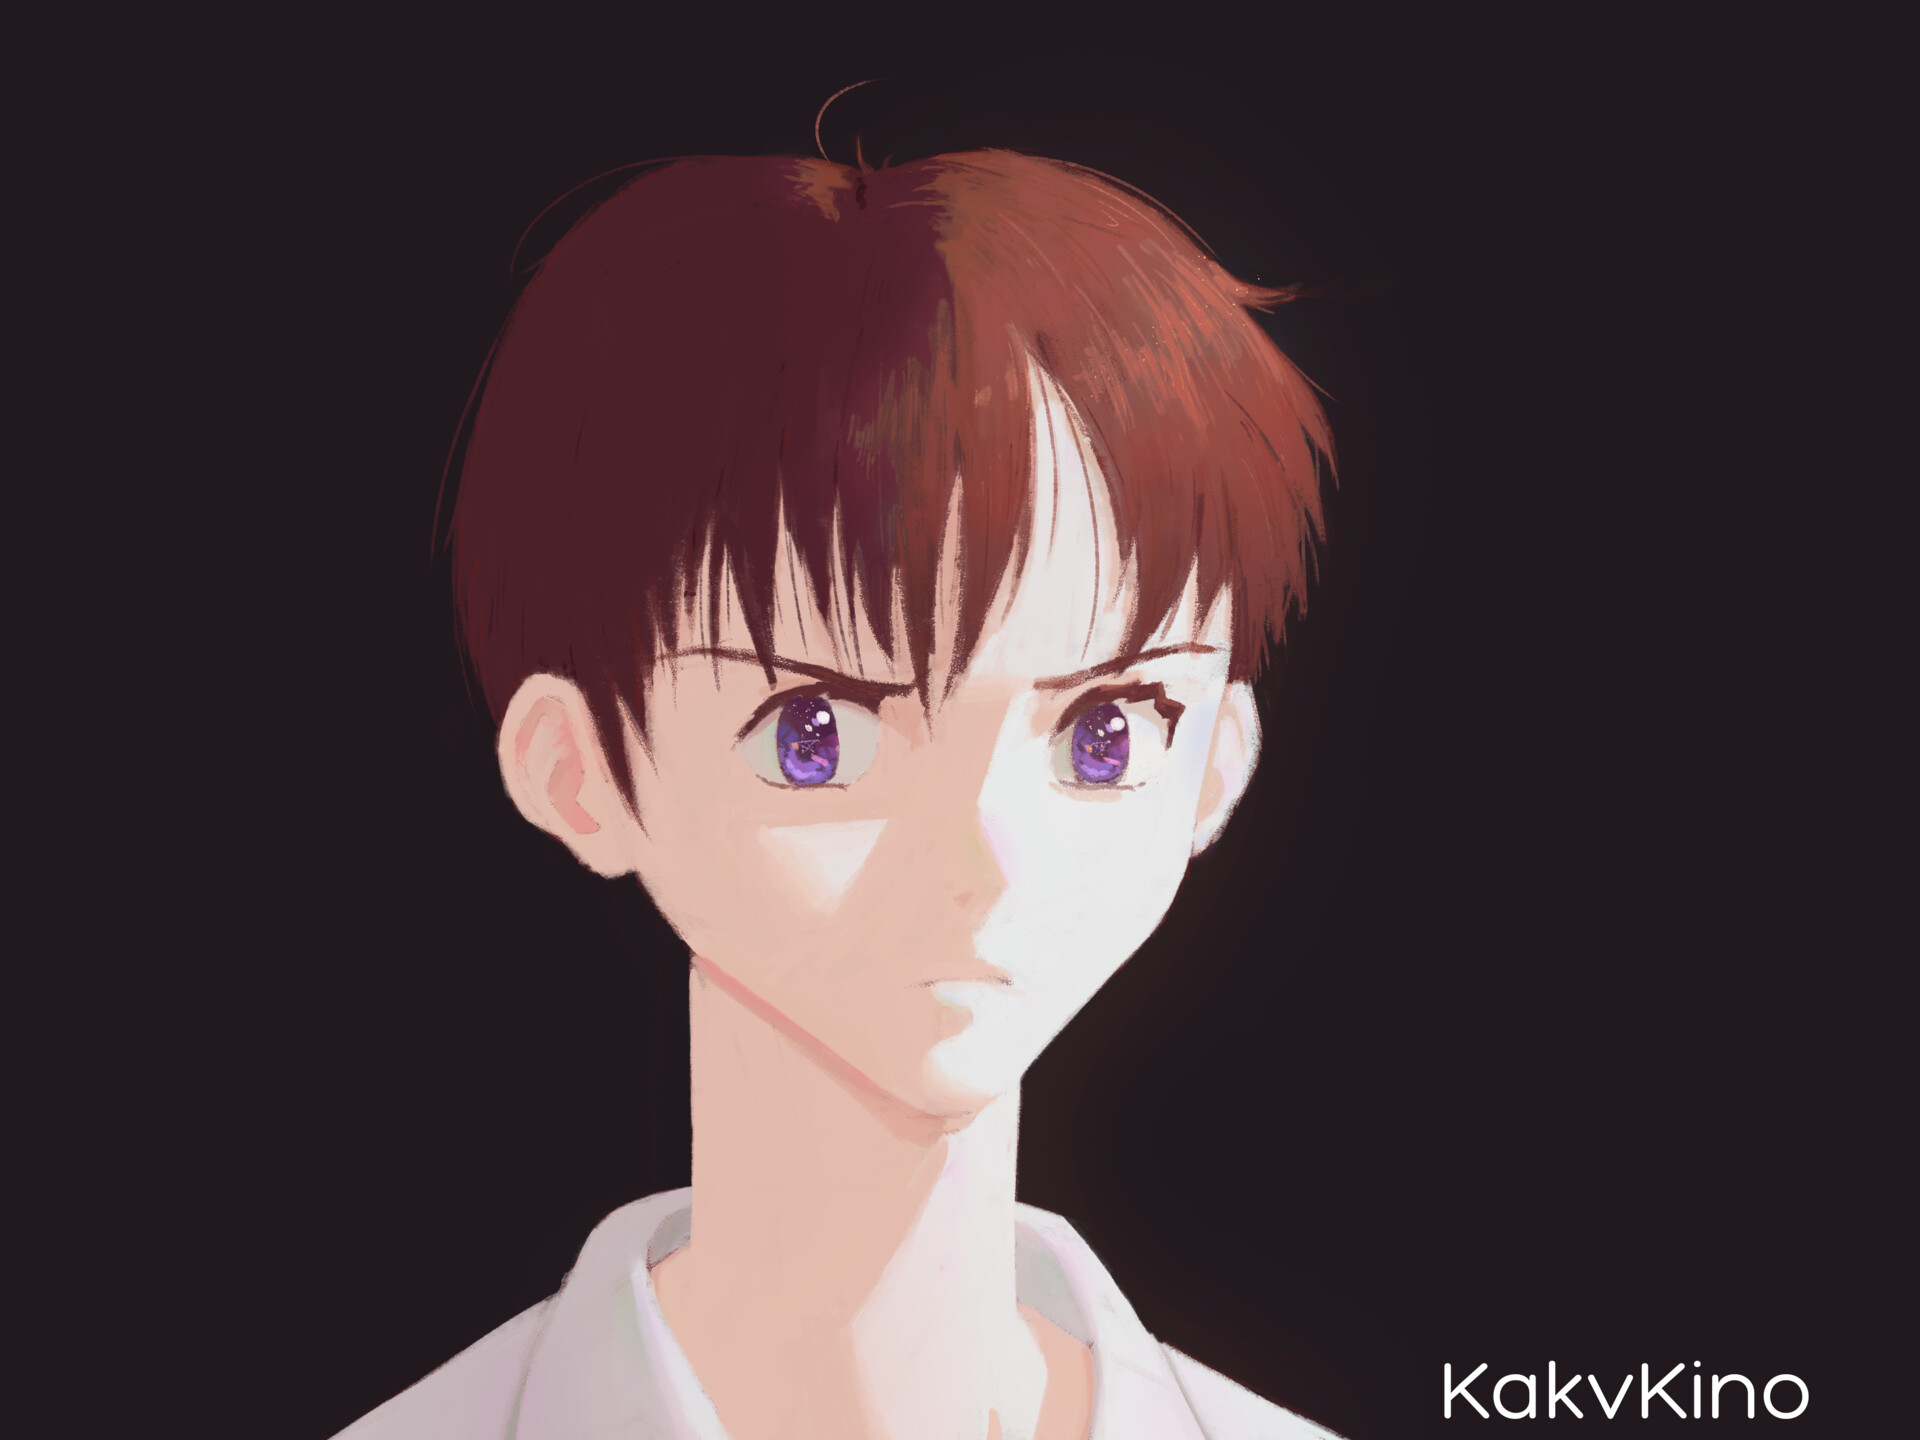 Ikari Shinji from Neon Genesis Evangelion.